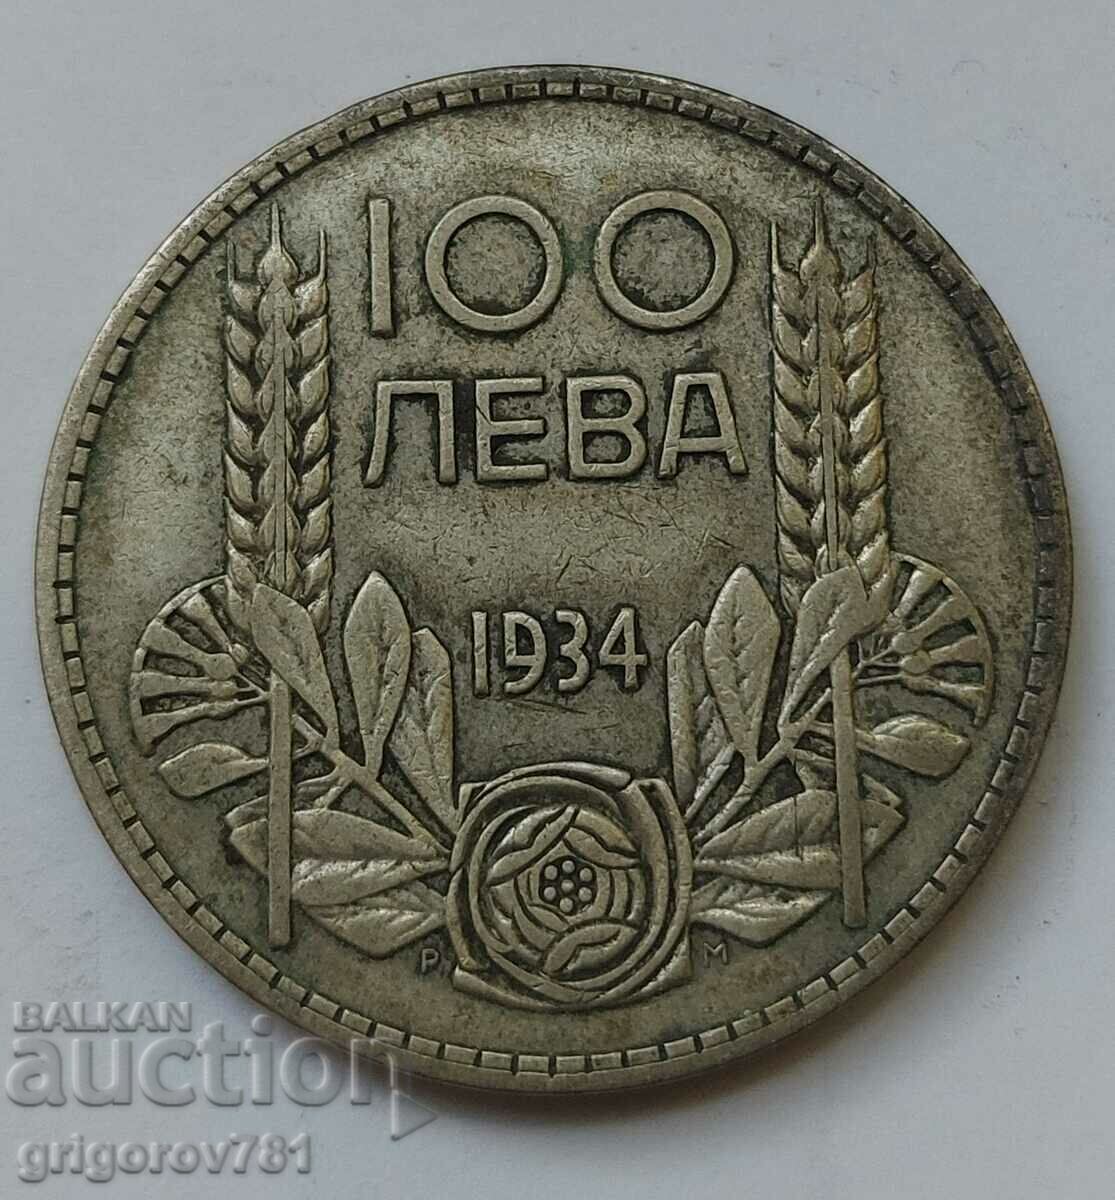 Ασήμι 100 λέβα Βουλγαρία 1934 - ασημένιο νόμισμα #6